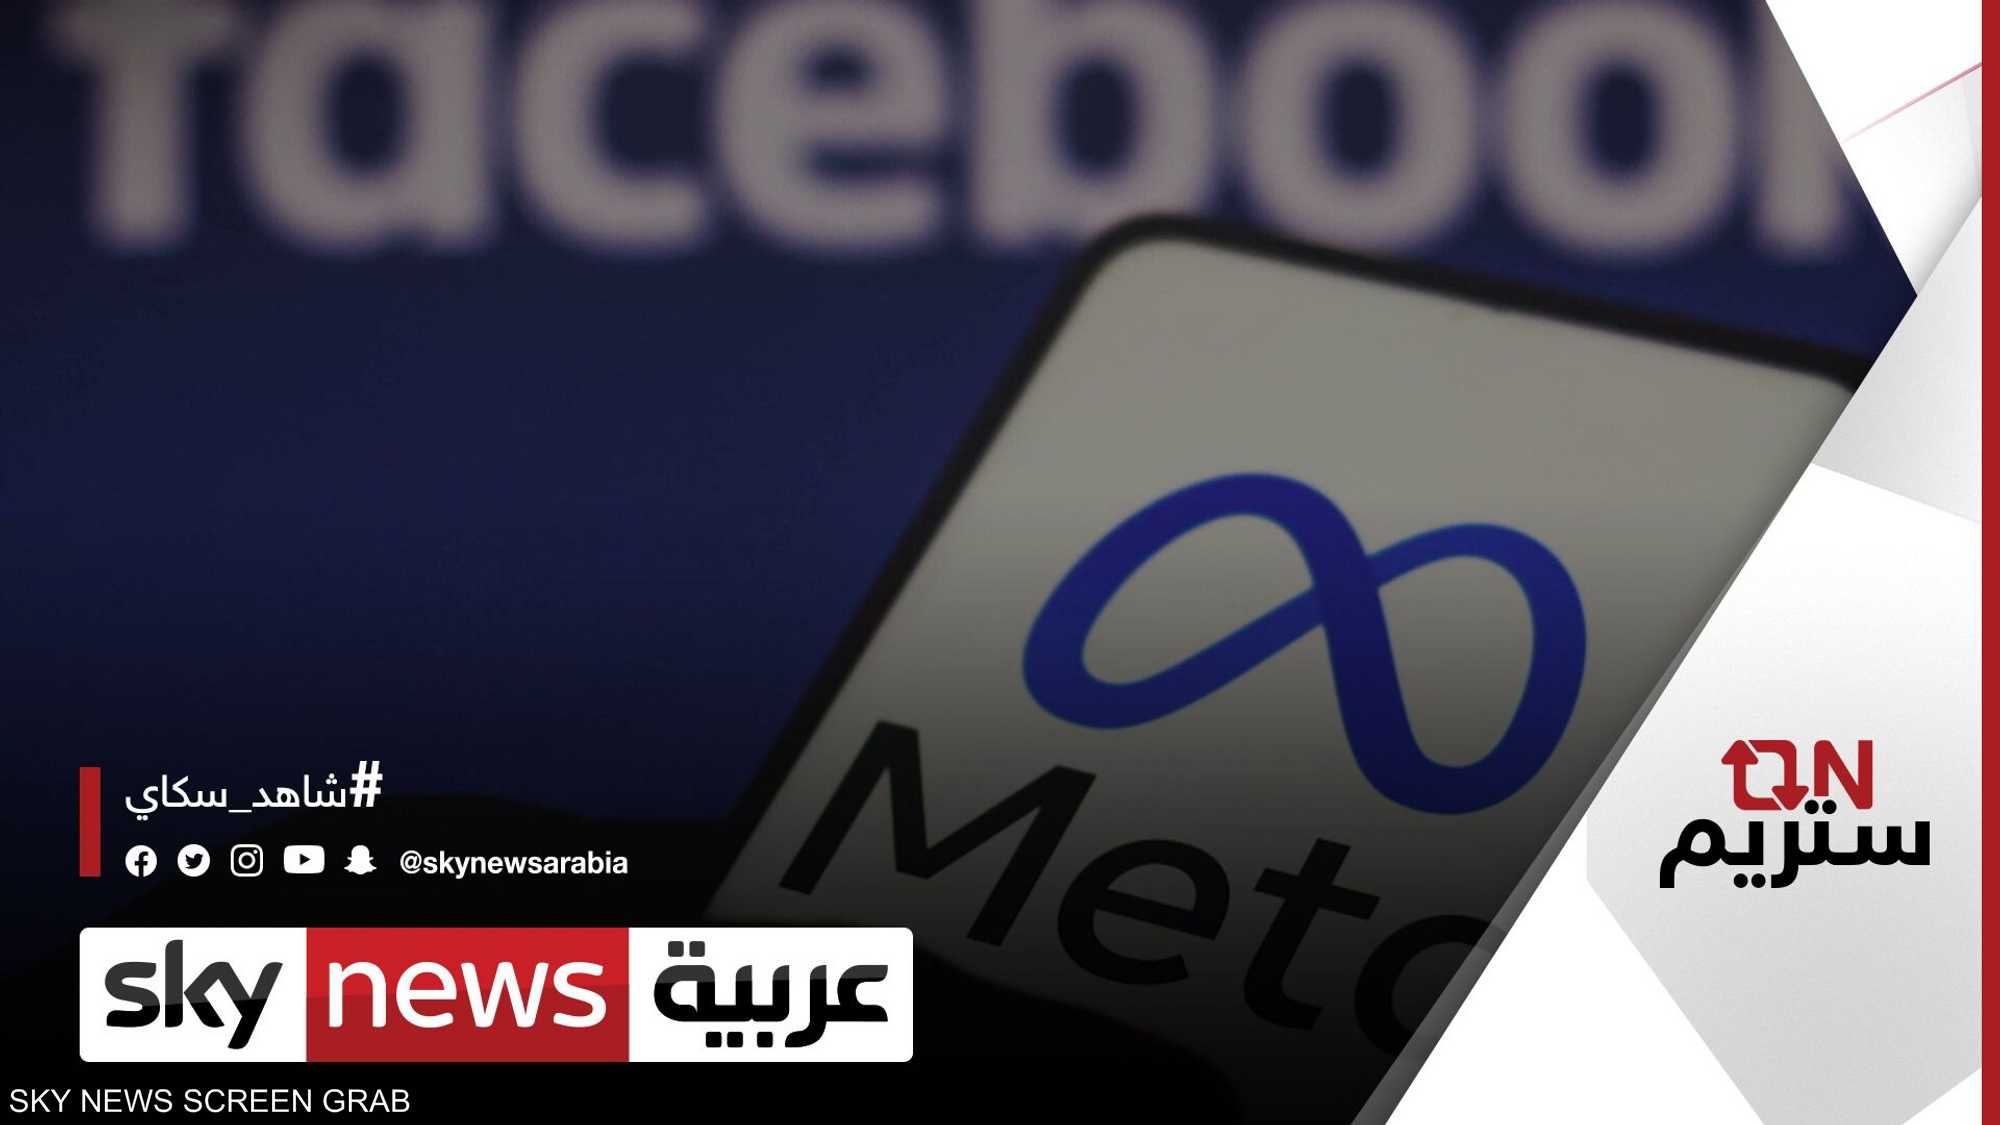 فيسبوك تختبر ميزة تحكم أكبر للمستخدمين في خلاصة الأخبار